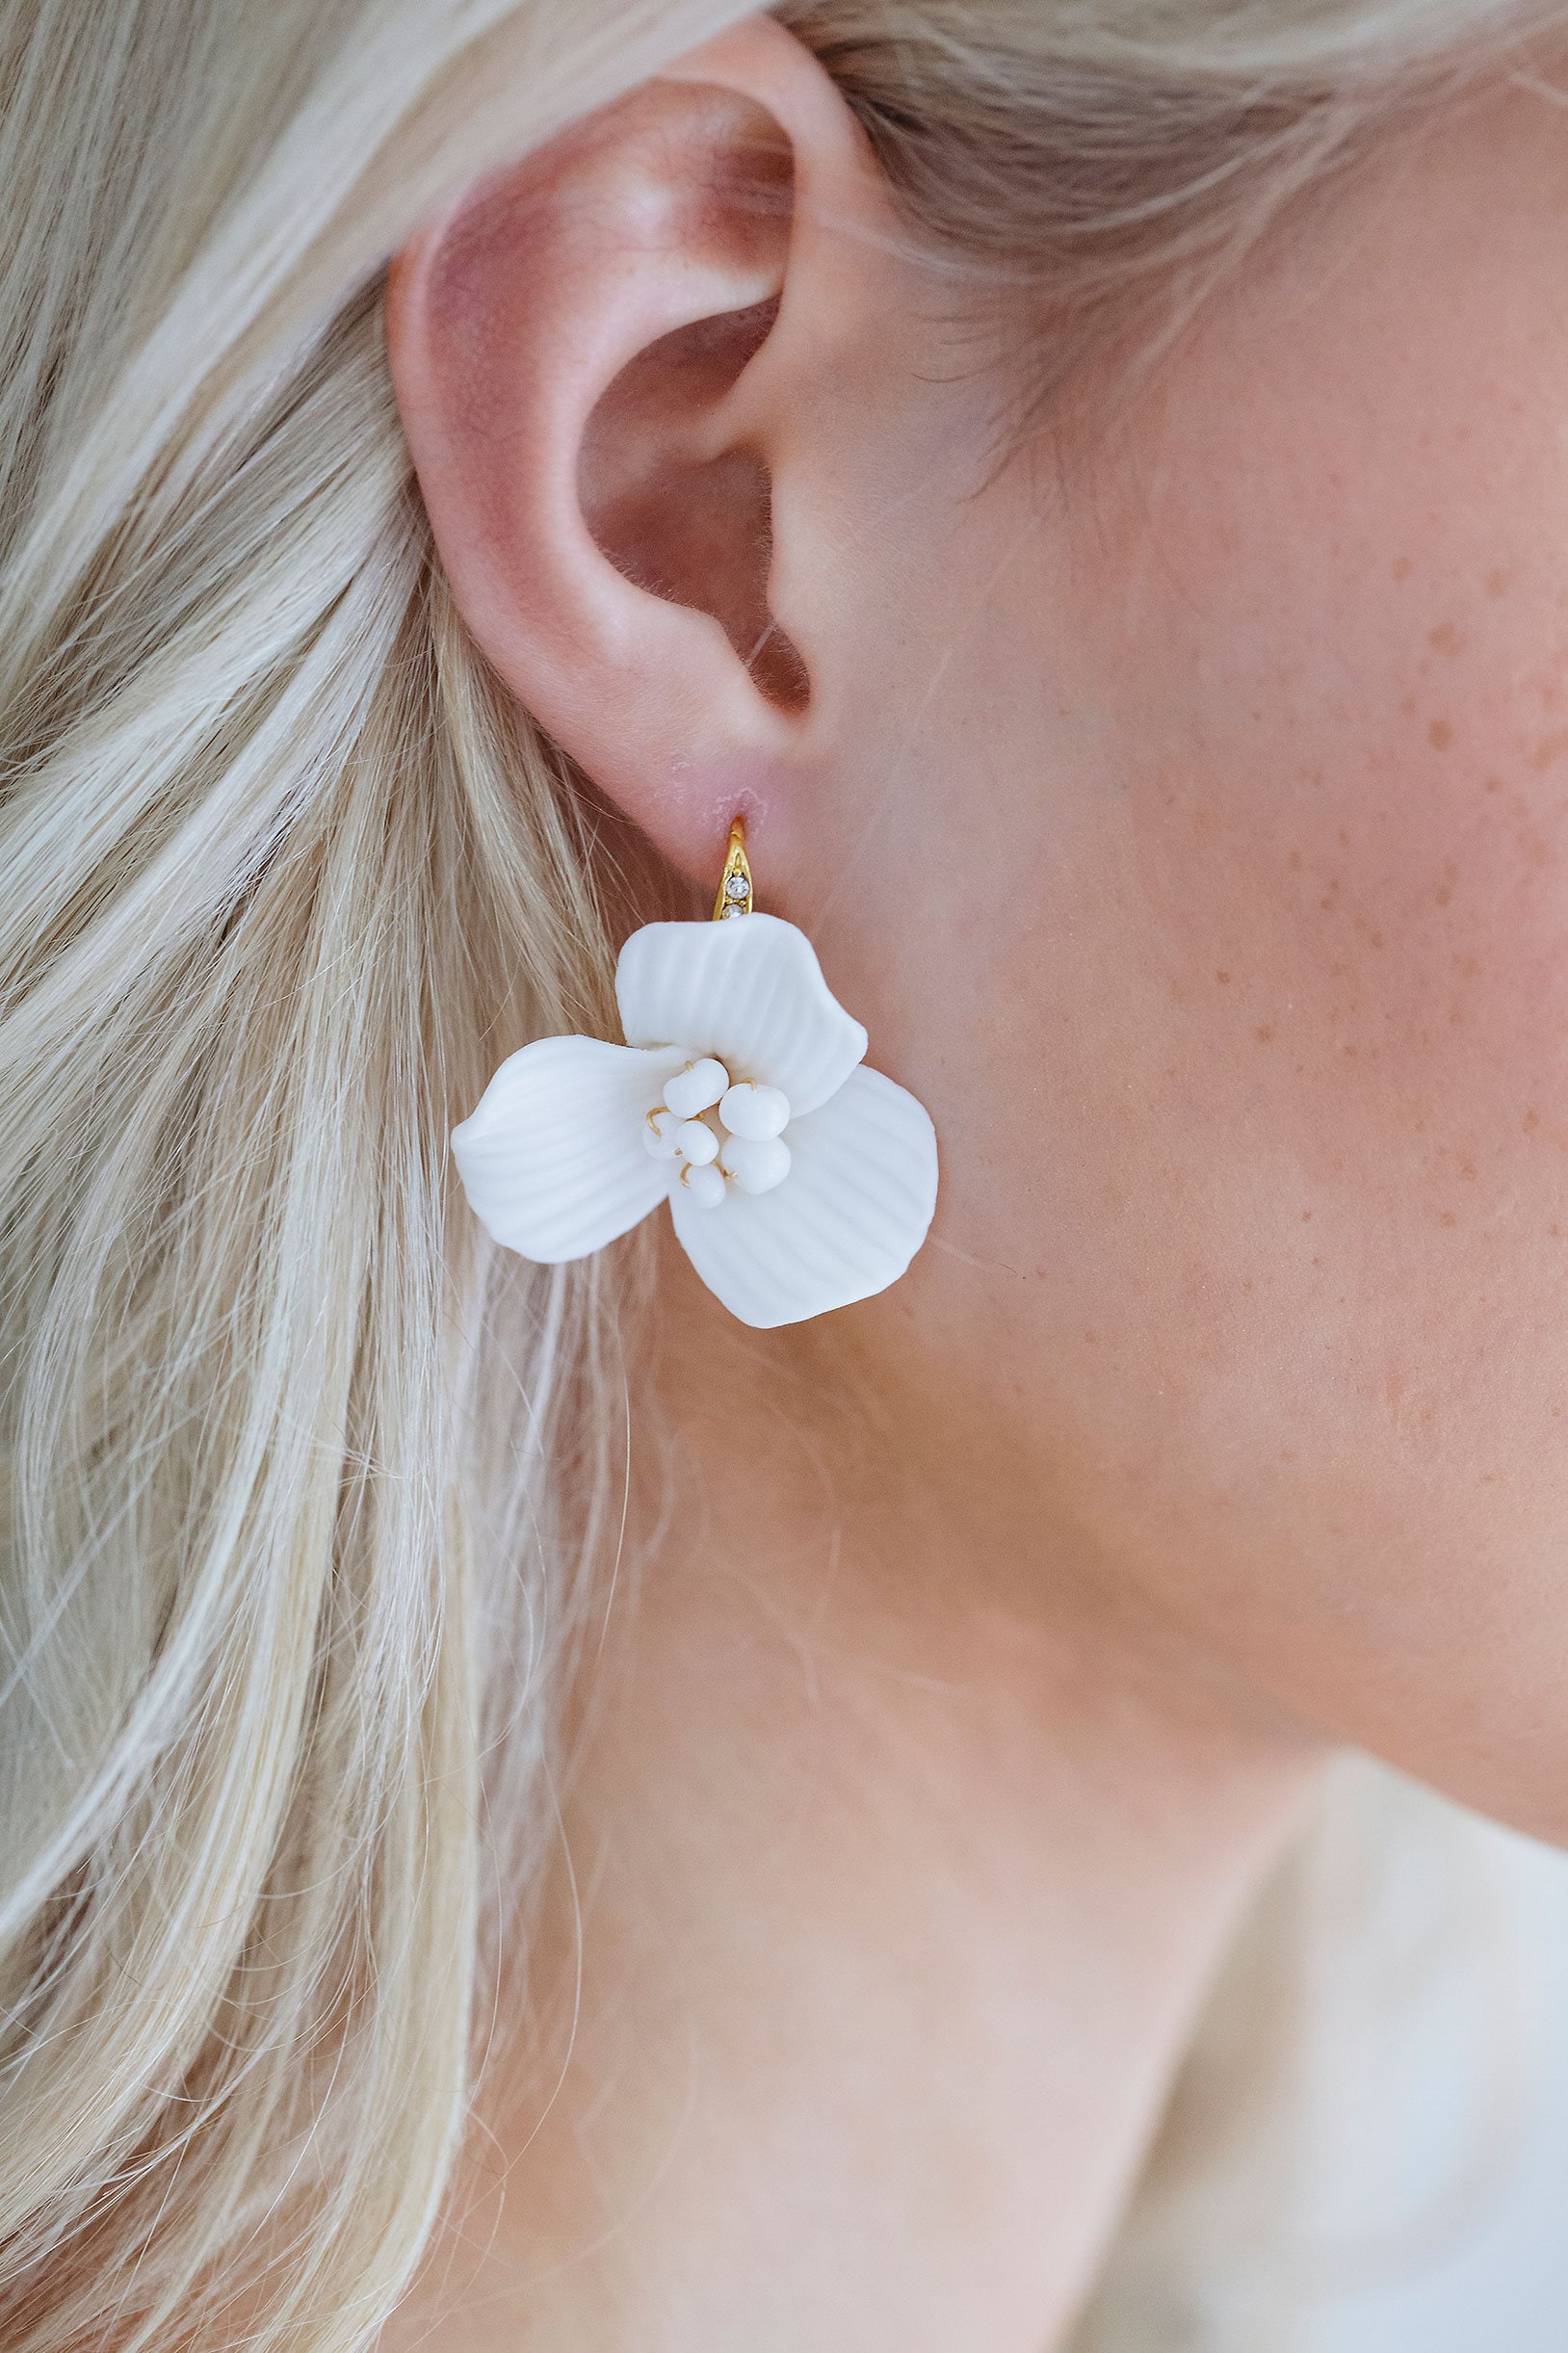 Aretes India Earrings Women Rhinestones Pendant Crystal Statement Earrings  For Women Flower Tassel Earring Fashion Jewelry Gifts